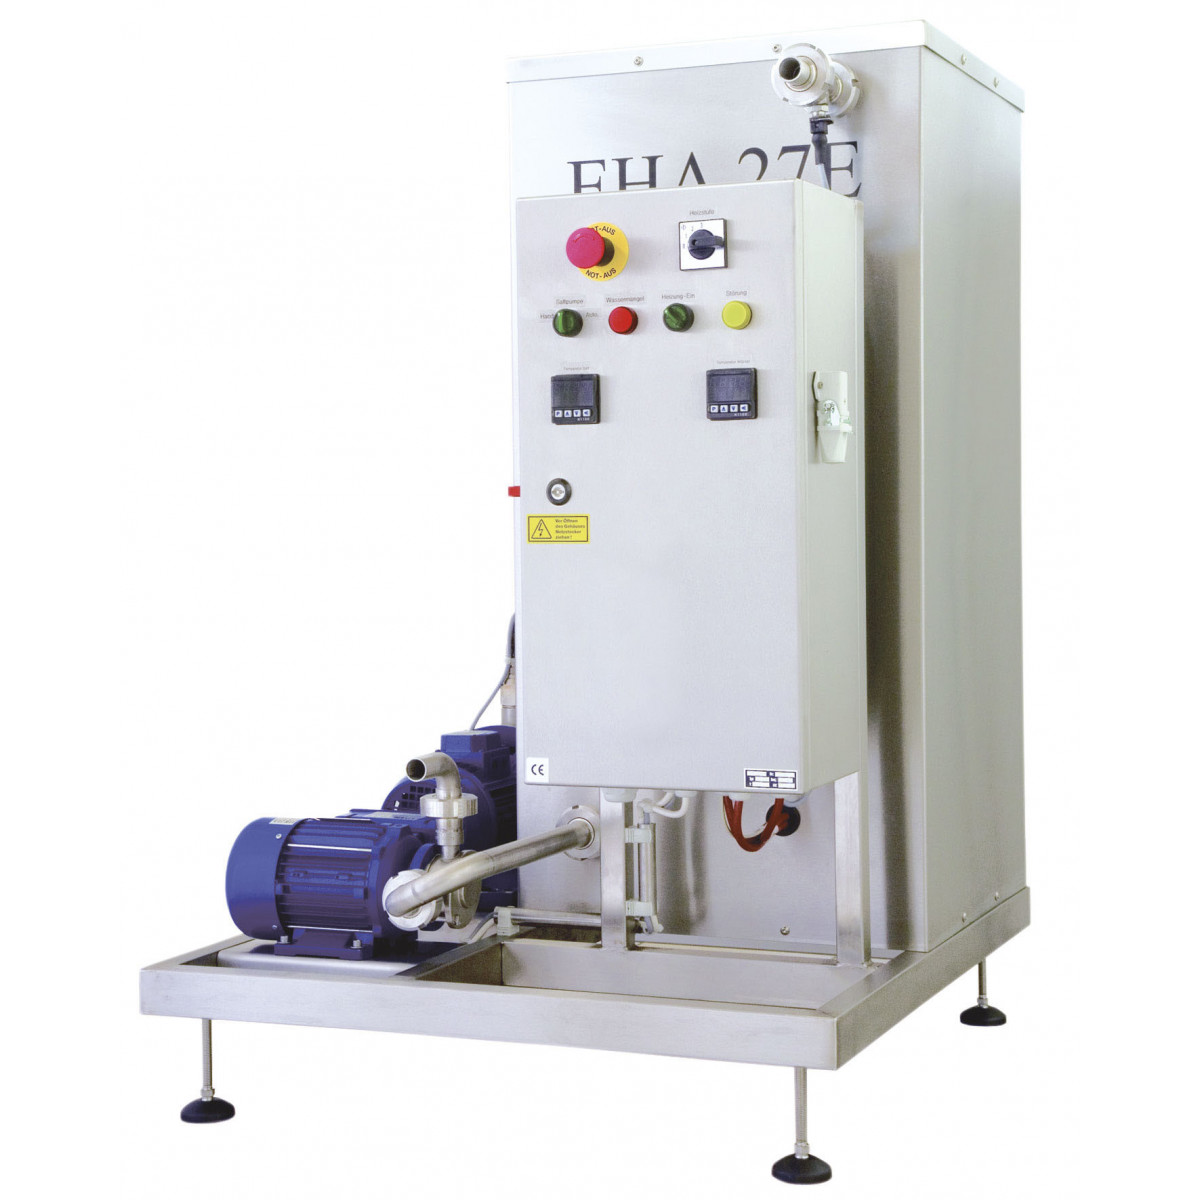 Pasteuriser EHA-27E, automatic, 300 litres/hour